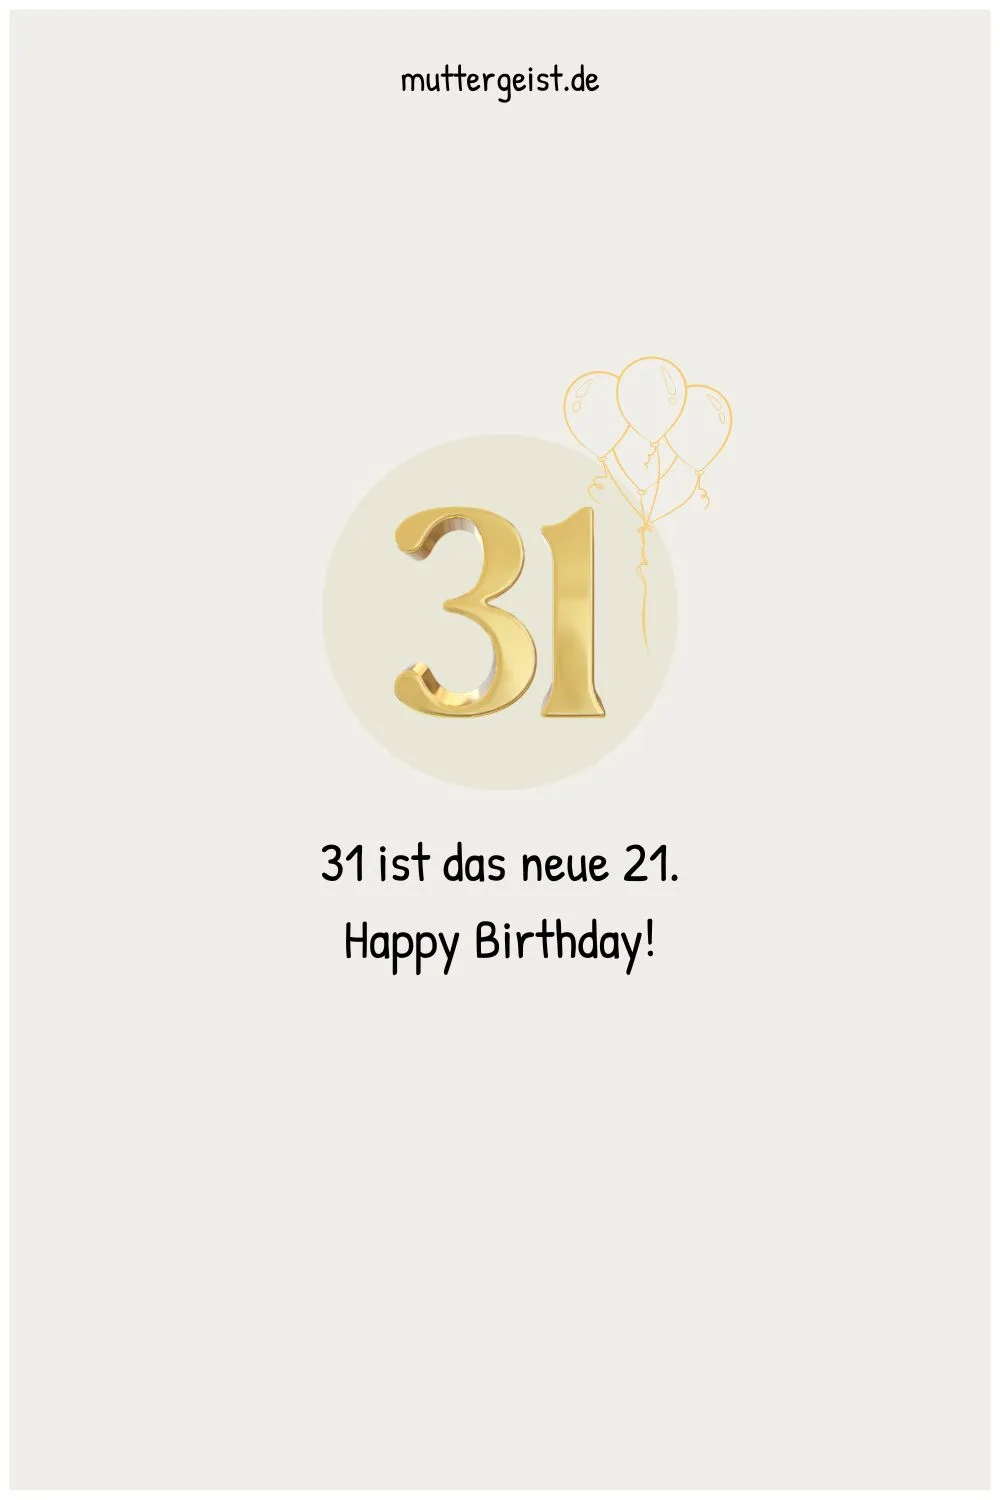 31 ist das neue 21. Happy Birthday